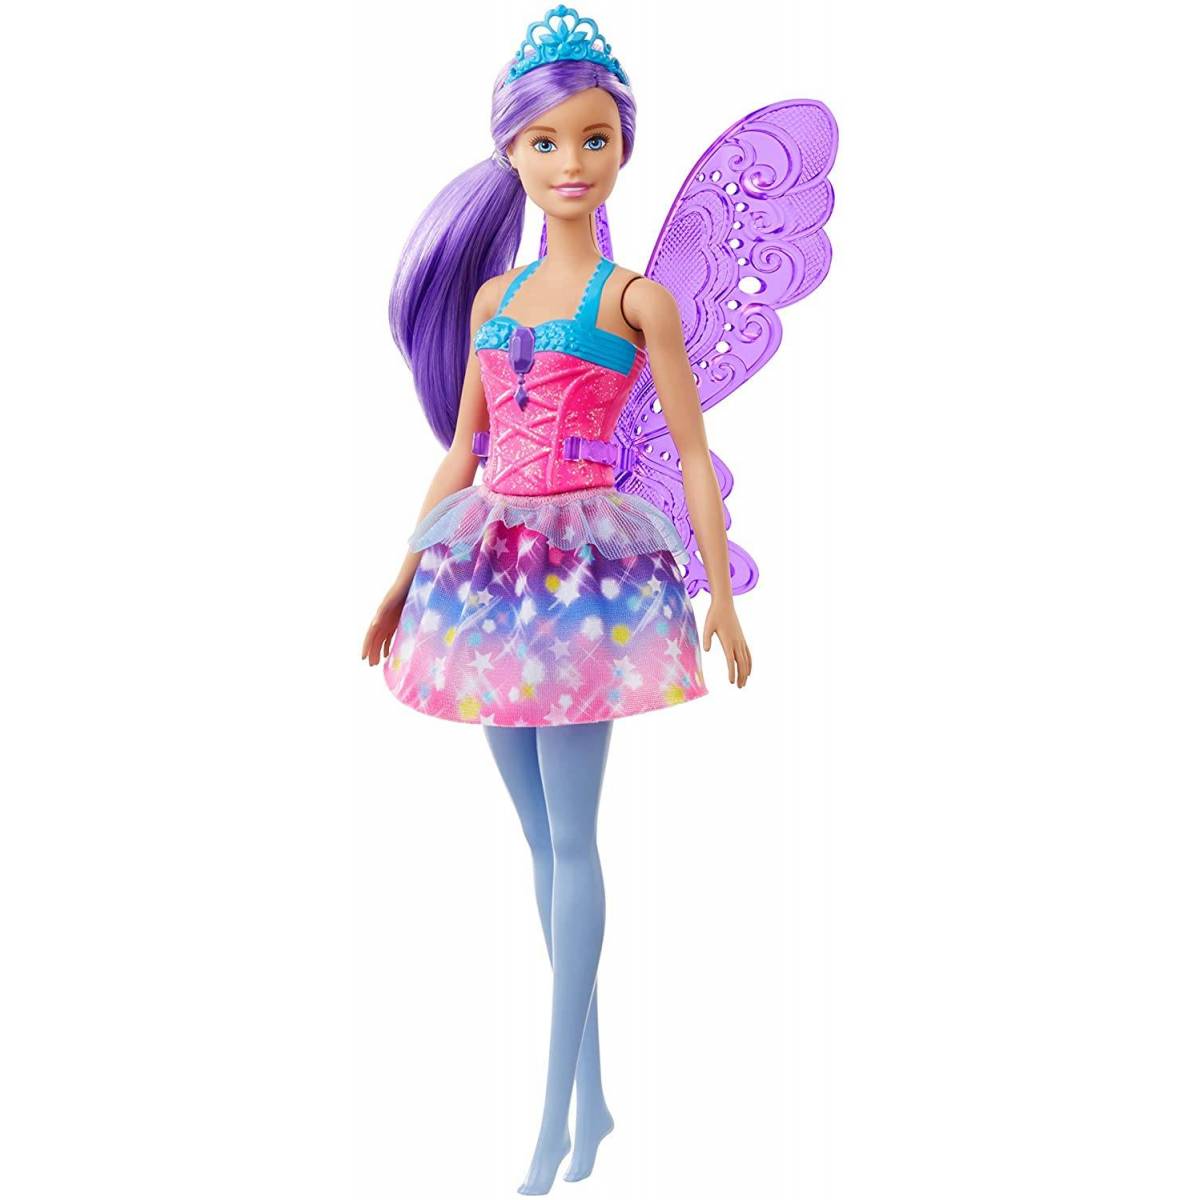 Fairy doll s111718pi